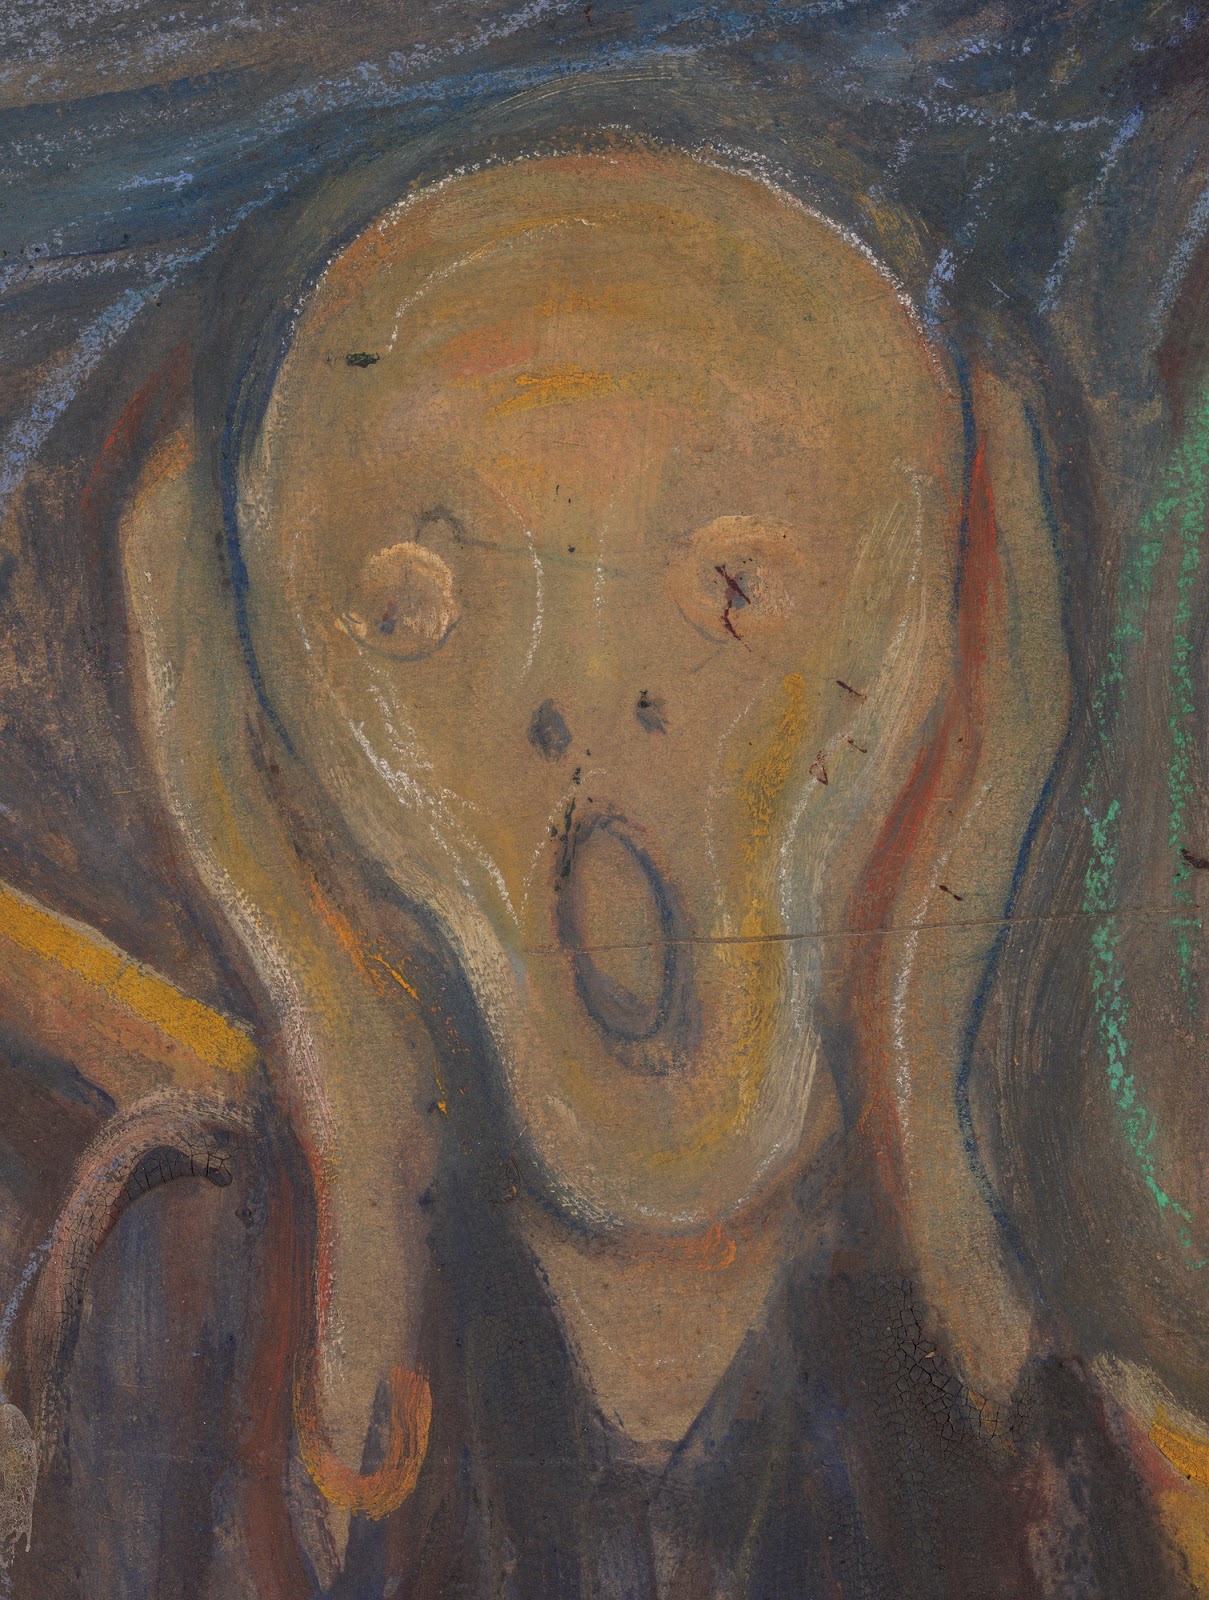 Edvard+Munch-1863-1944 (65).jpg